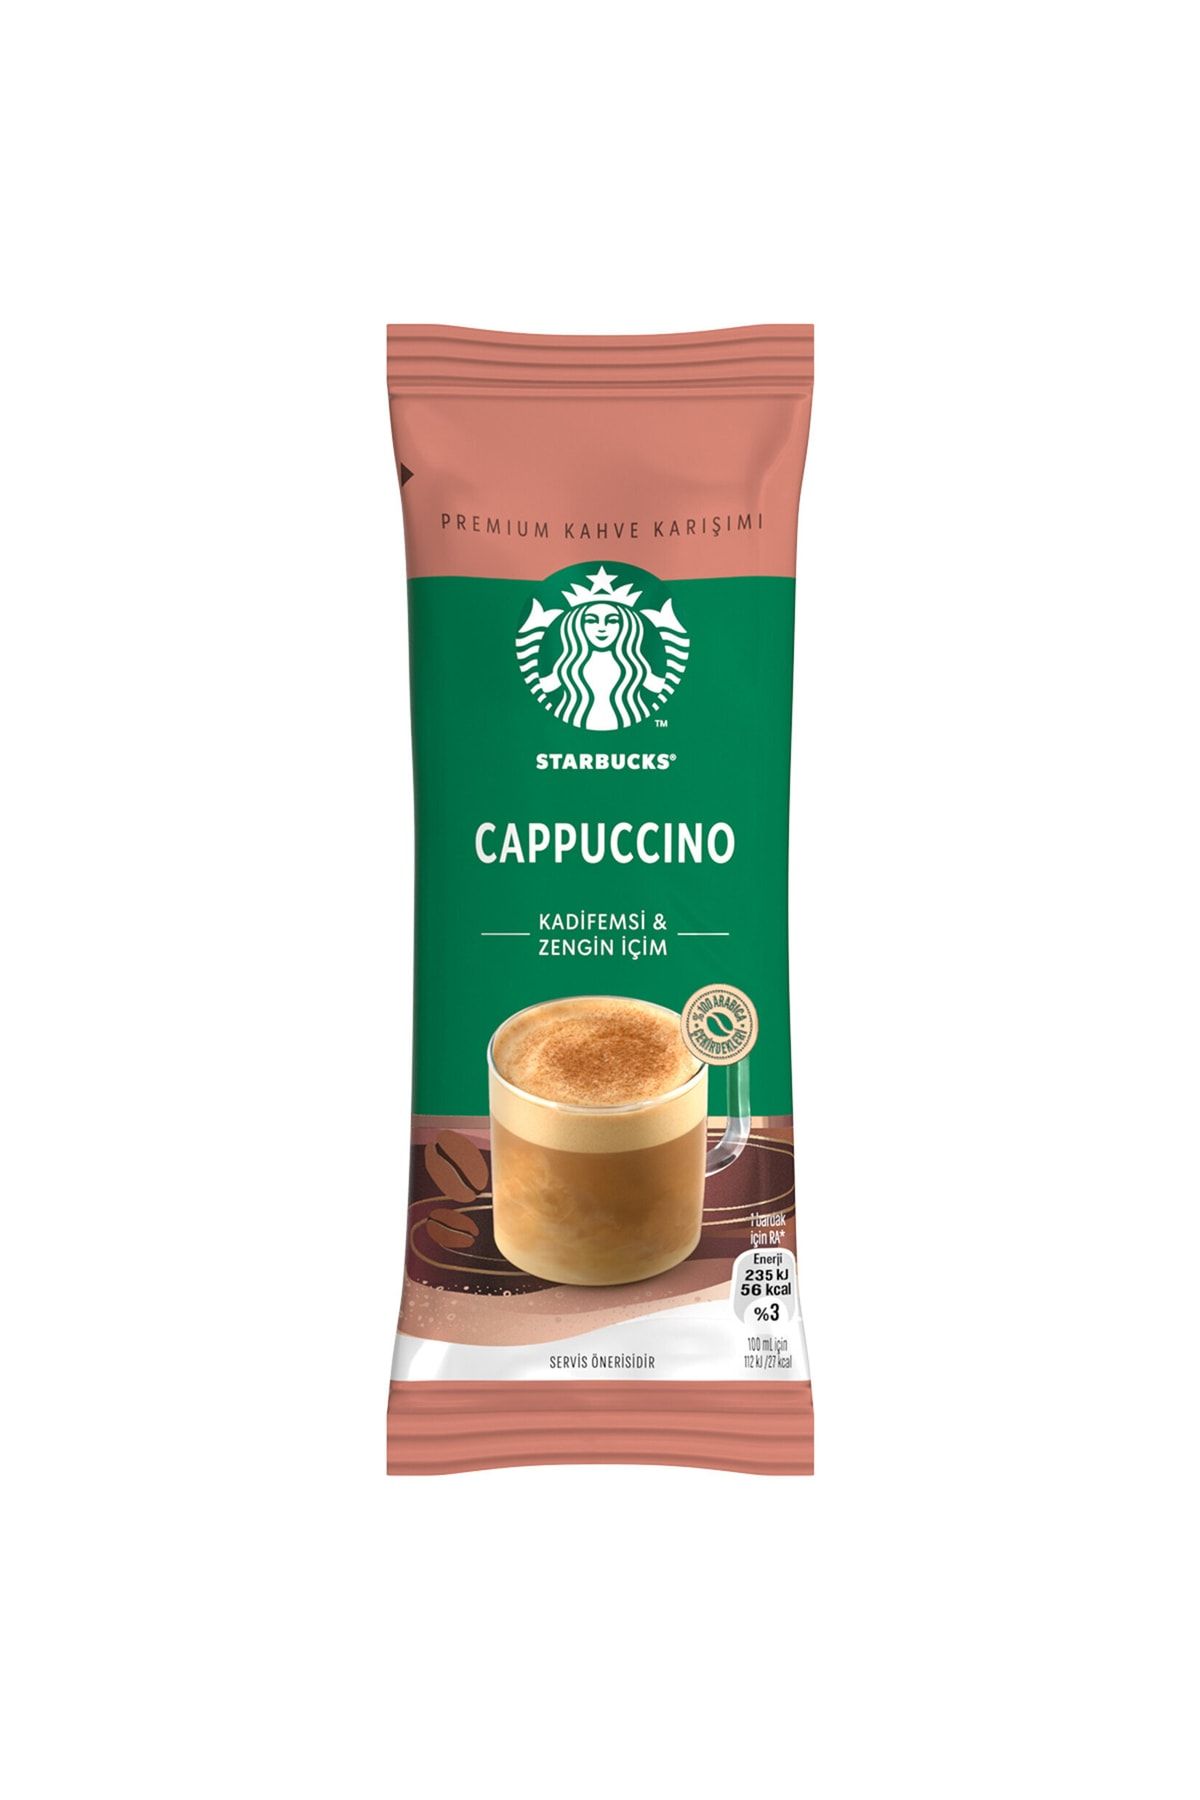 Starbucks Premium Kahve Karışımı 10 Adet Karışık Gönderilir. Mocha, Vanilya,latte Karamel